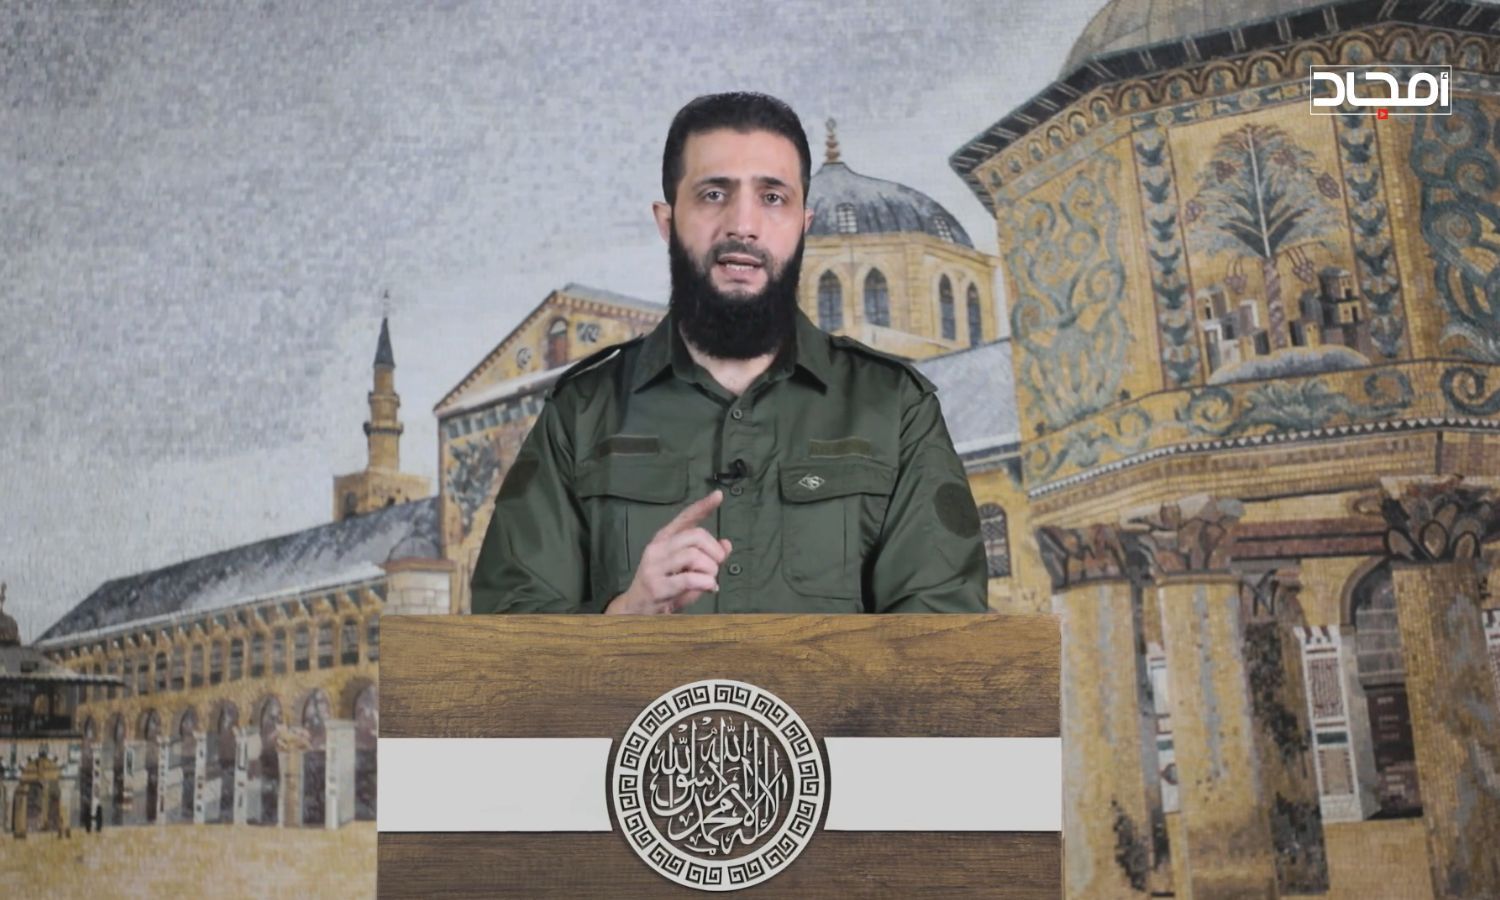 القائد العام لـ"هيئة تحرير الشام" صاحبة النفوذ العسكري في إدلب، "أبو محمد الجولاني" خلال إلقائه كلمة بعنوان "لن نصالح"- 2 كانون الثاني 2023 (أمجاد)